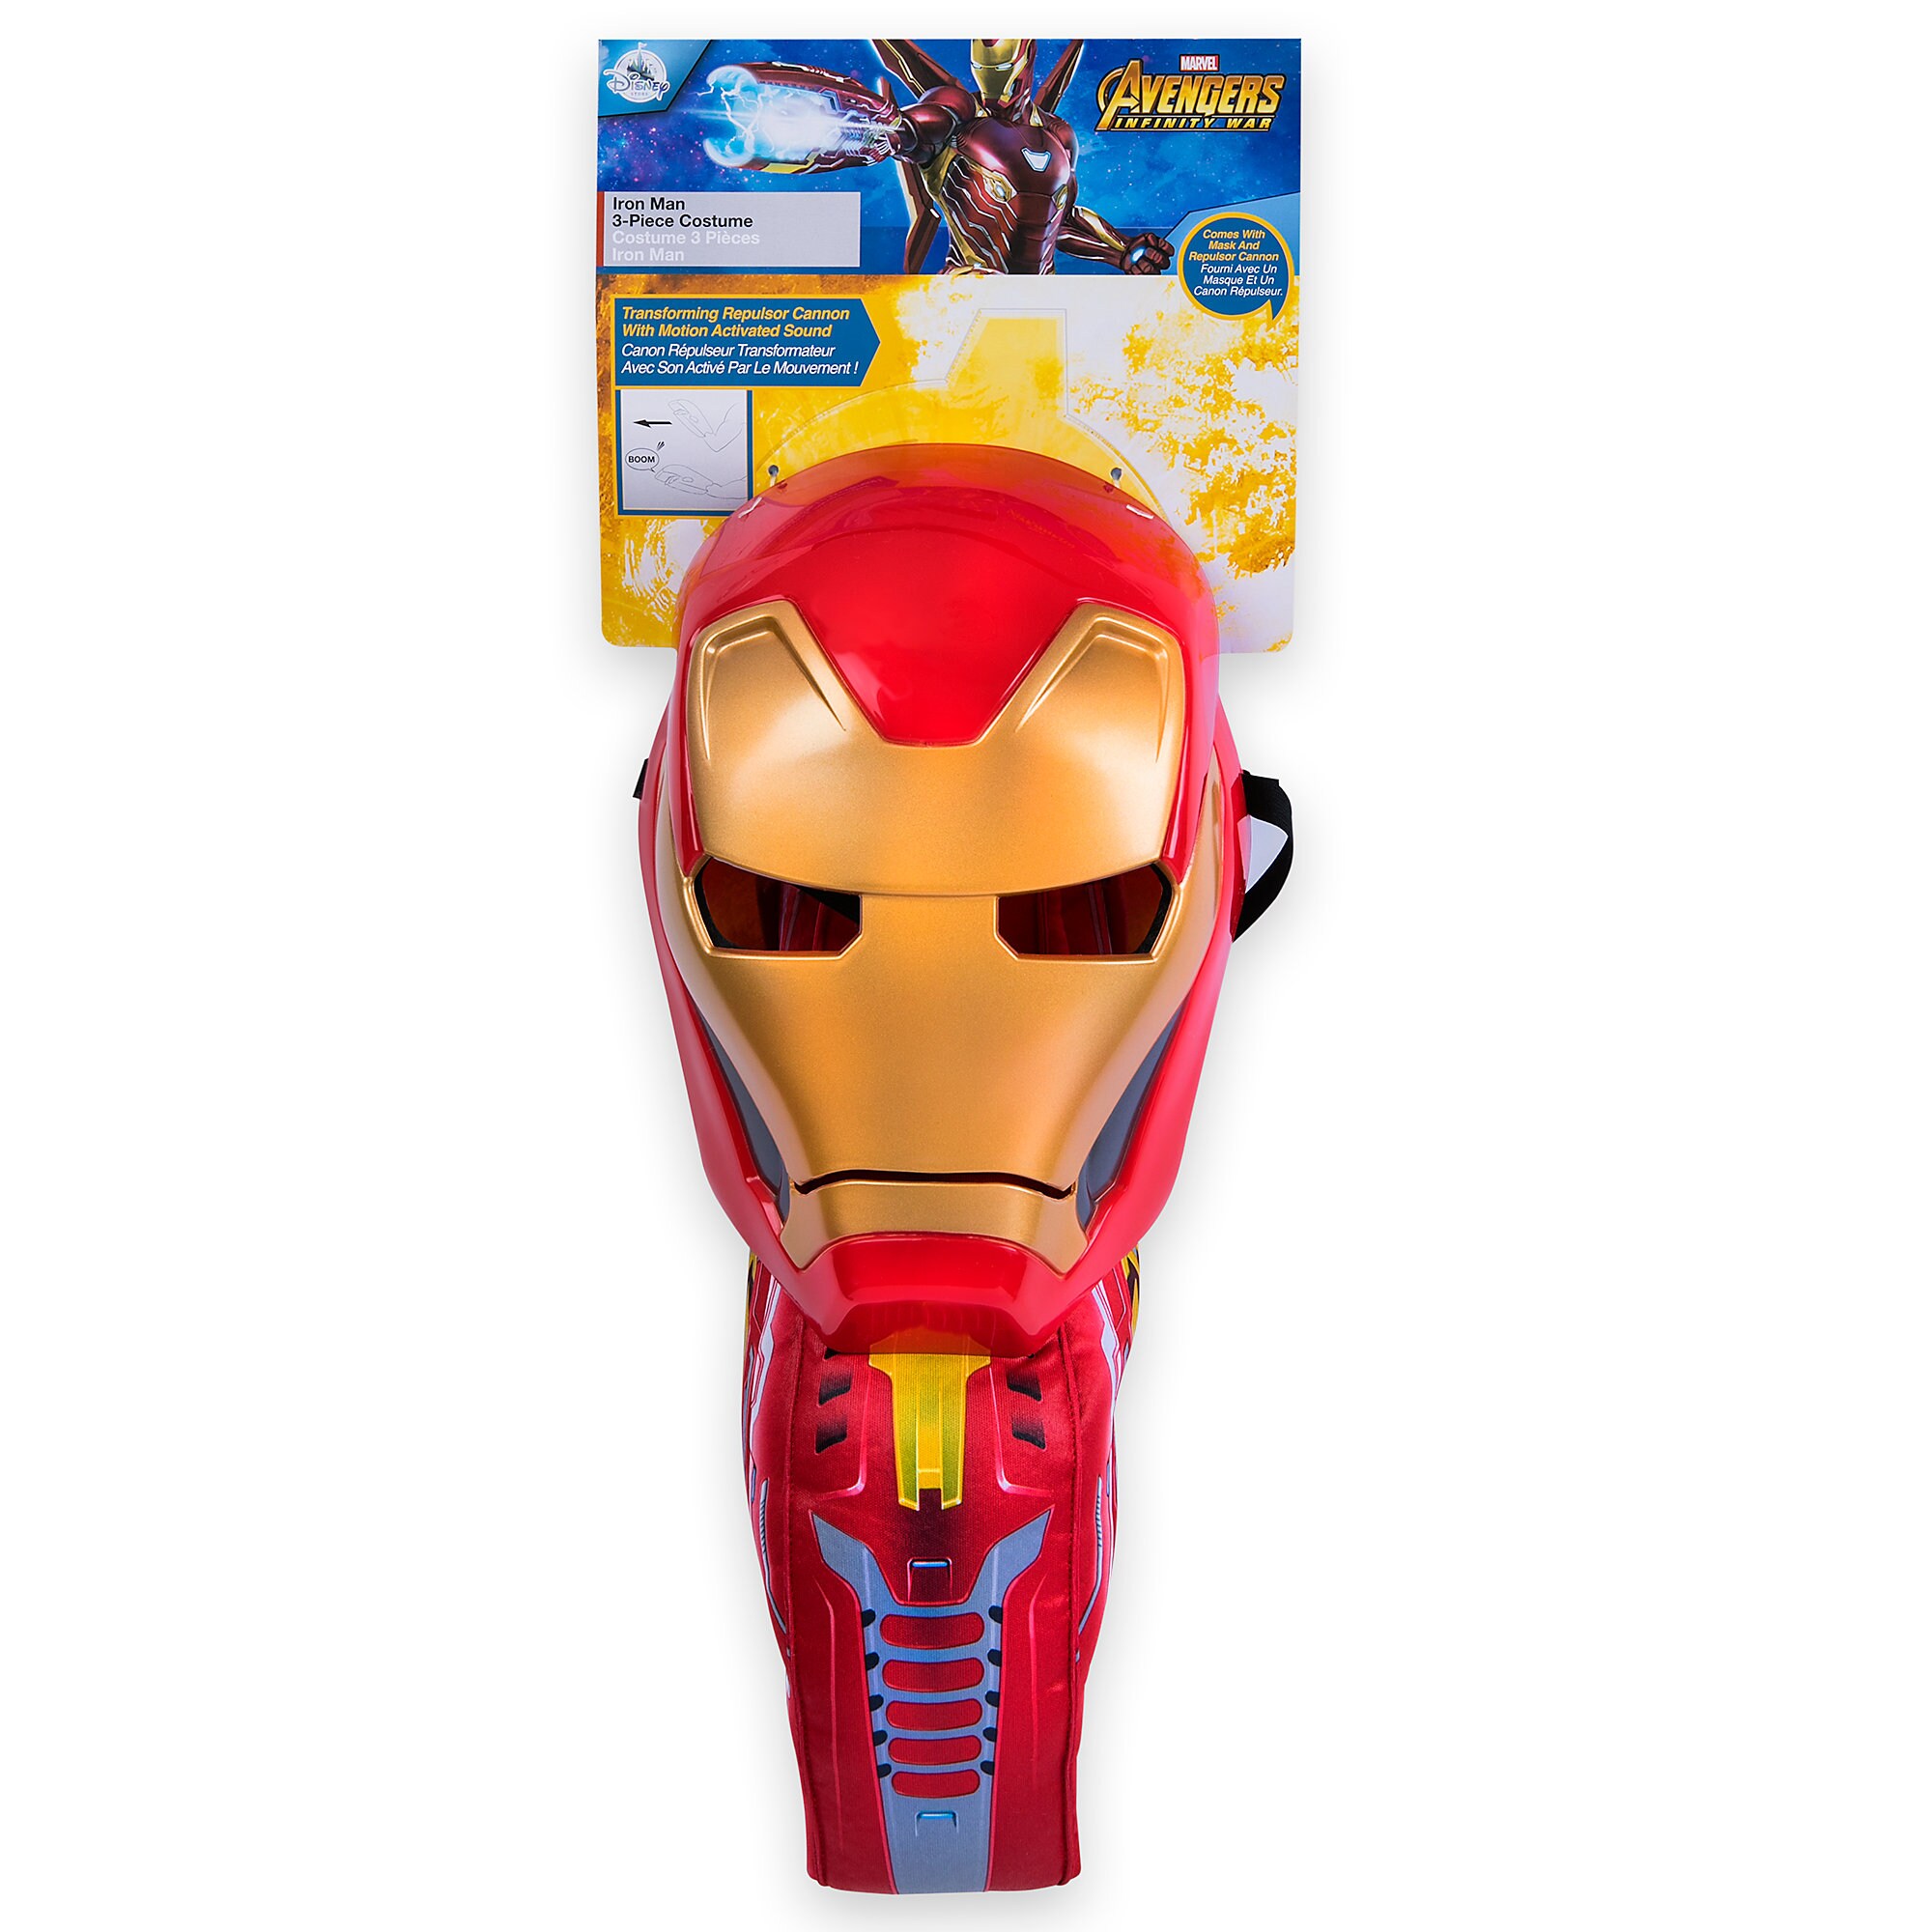 Iron Man Costume for Kids - Marvel's Avengers: Infinity War